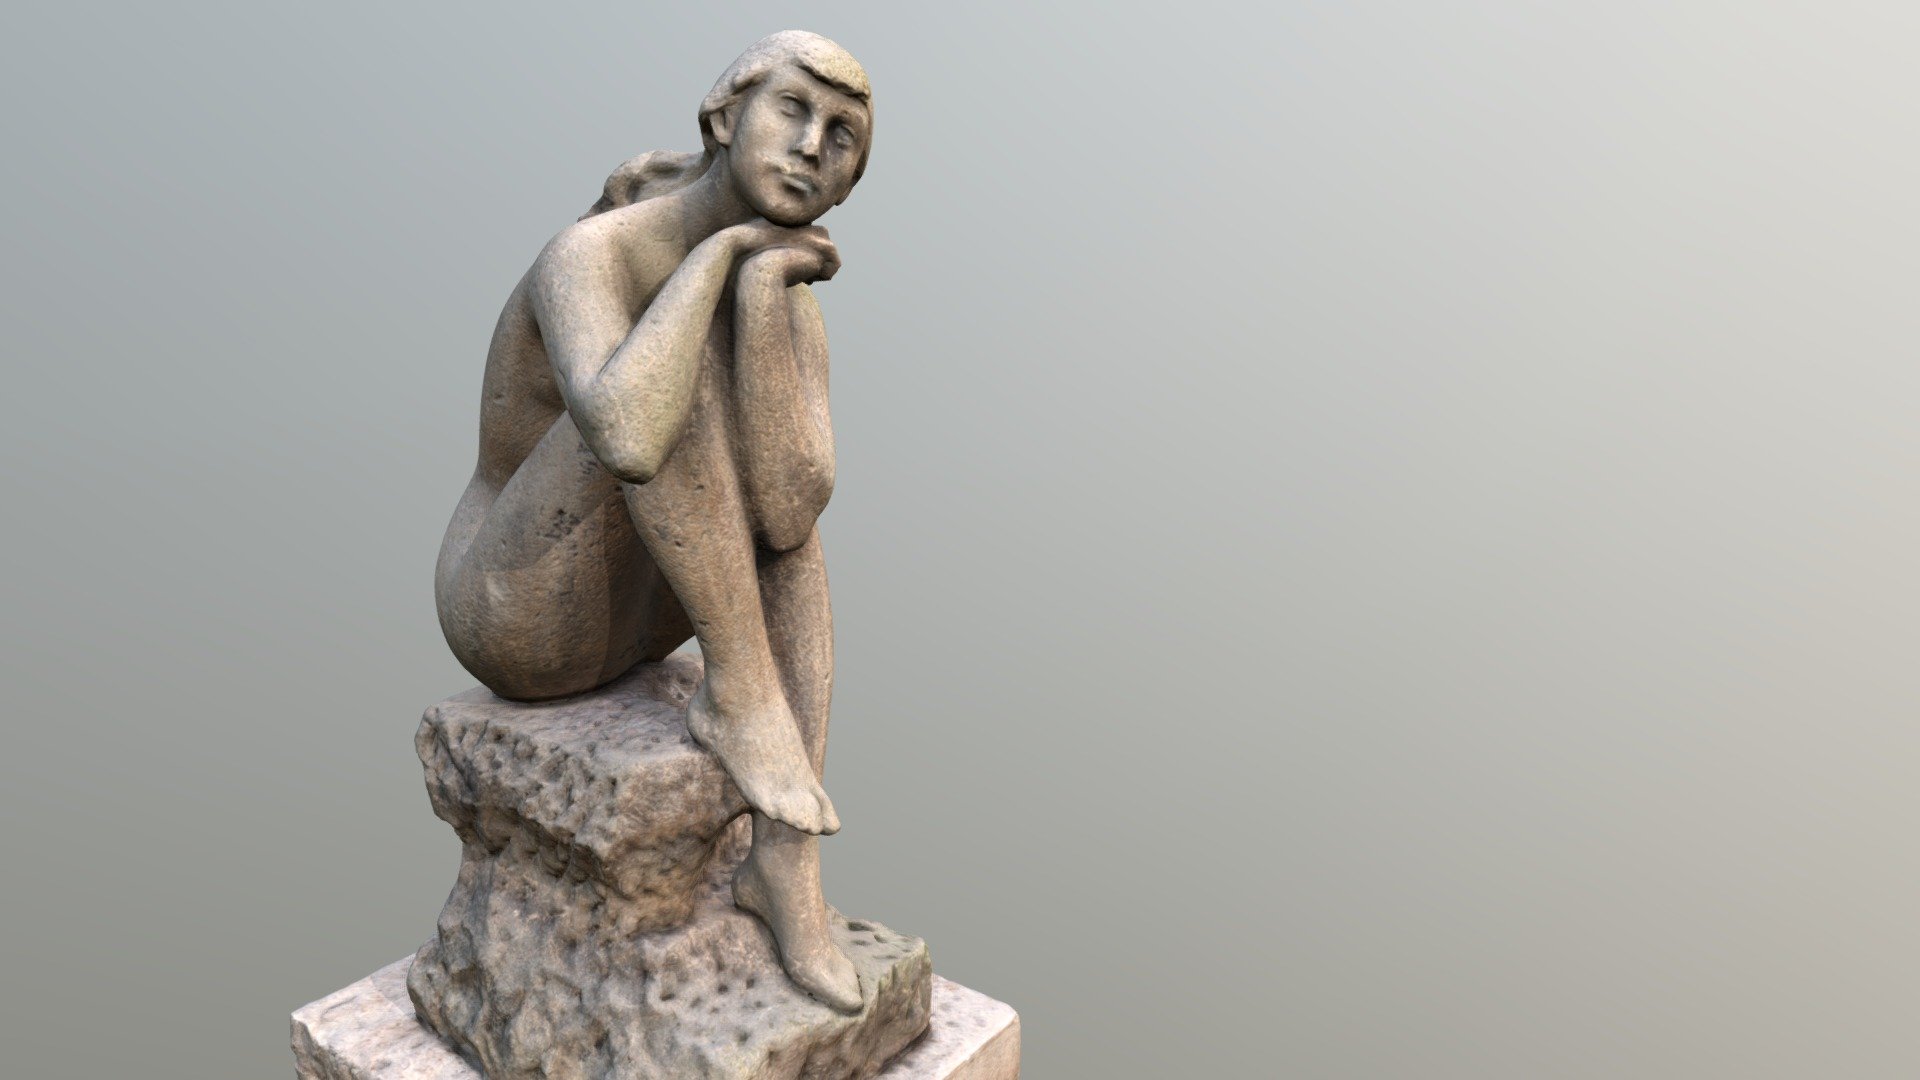 Sitting Nude – Jan Hána, Prague - 3D model by Andrej Boleslavský (@AndrejBoleslavsky) 3d model